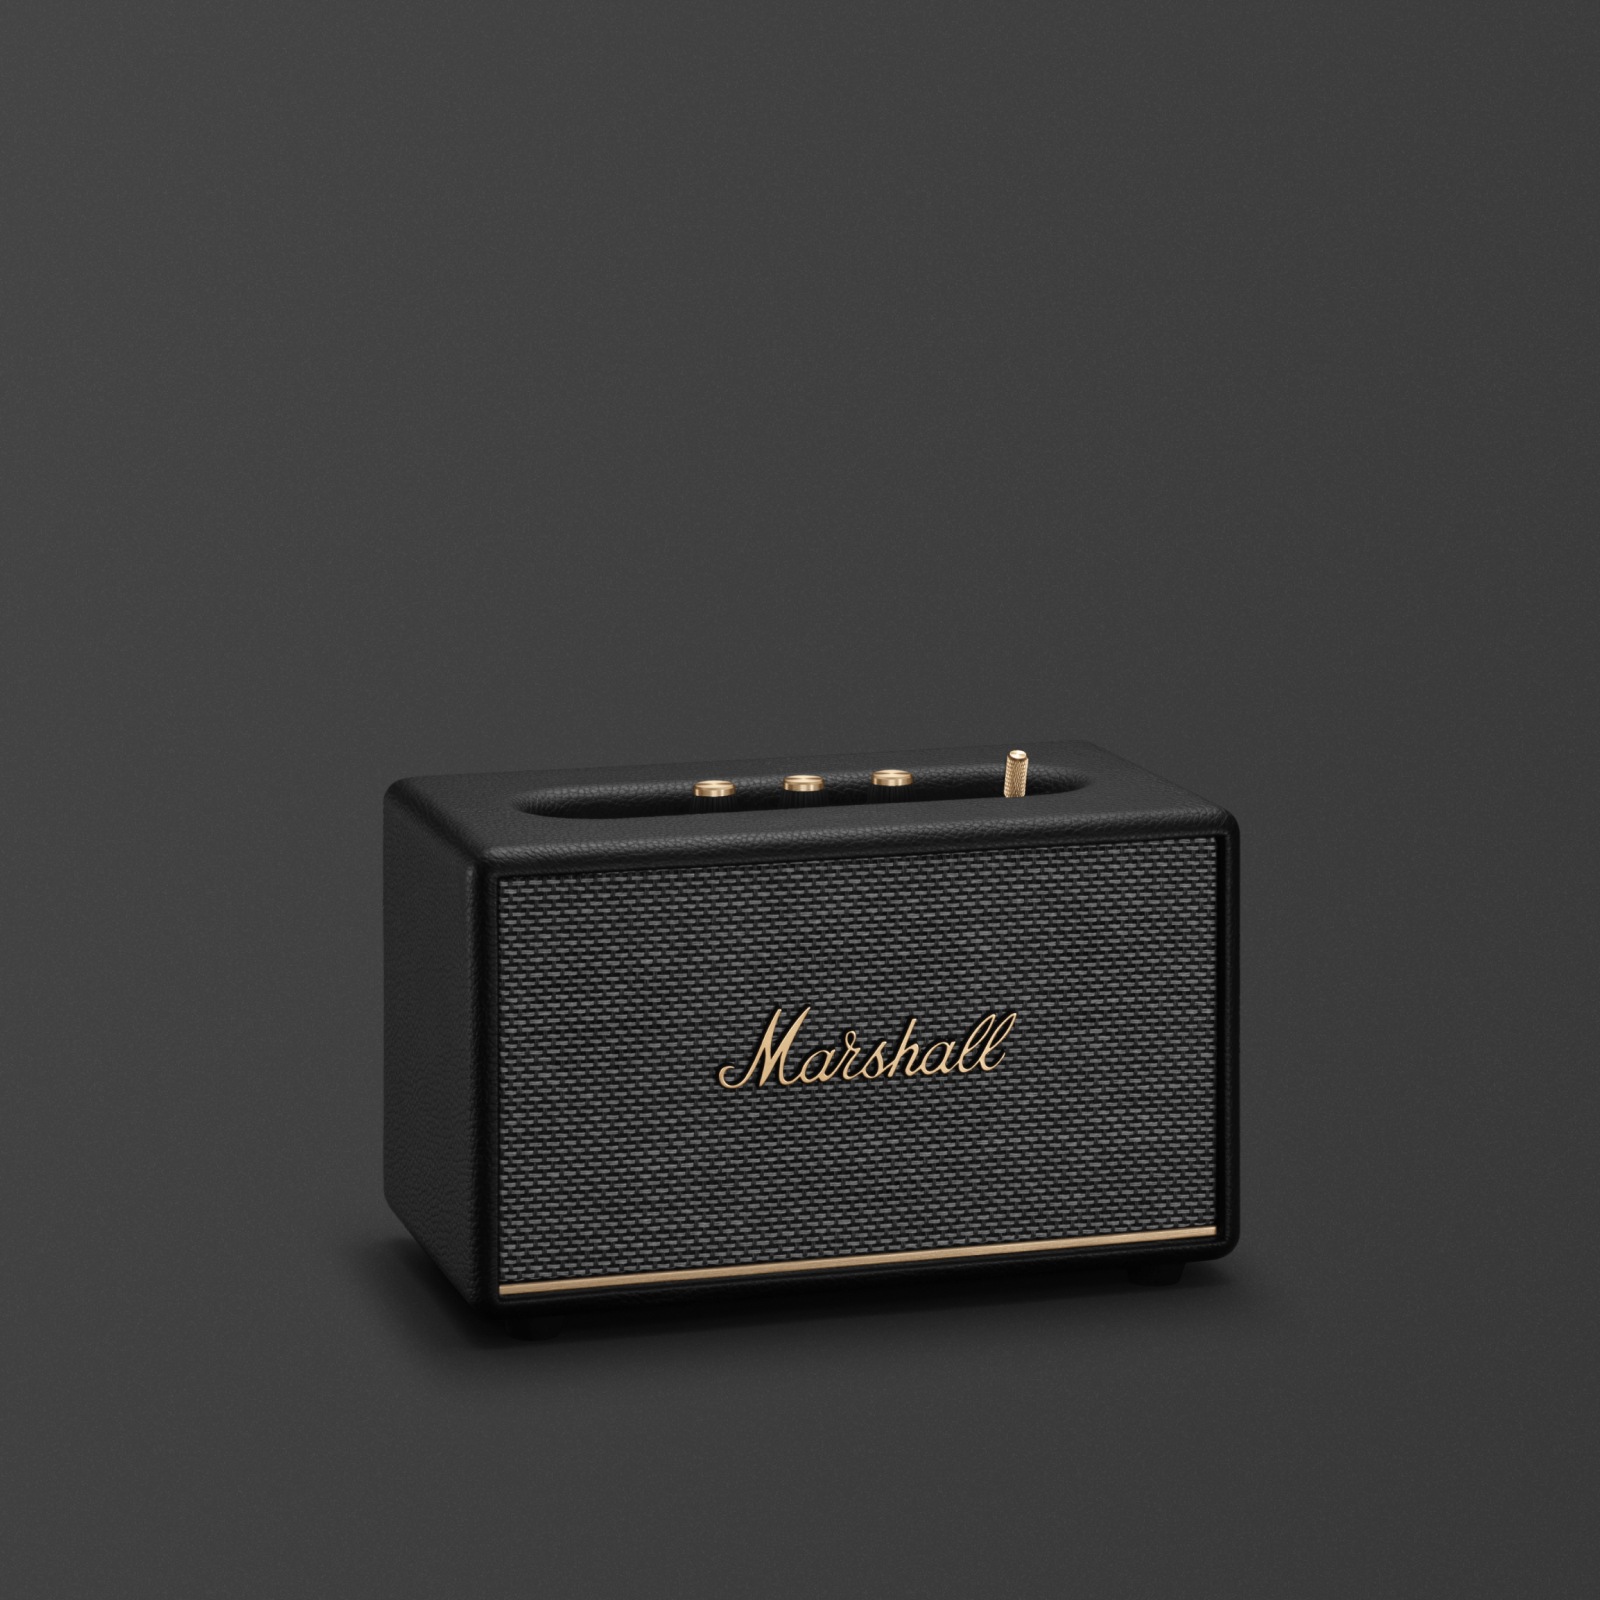 Marshall Acton III Bluetooth-Lautsprecher in Schwarz und Gold.